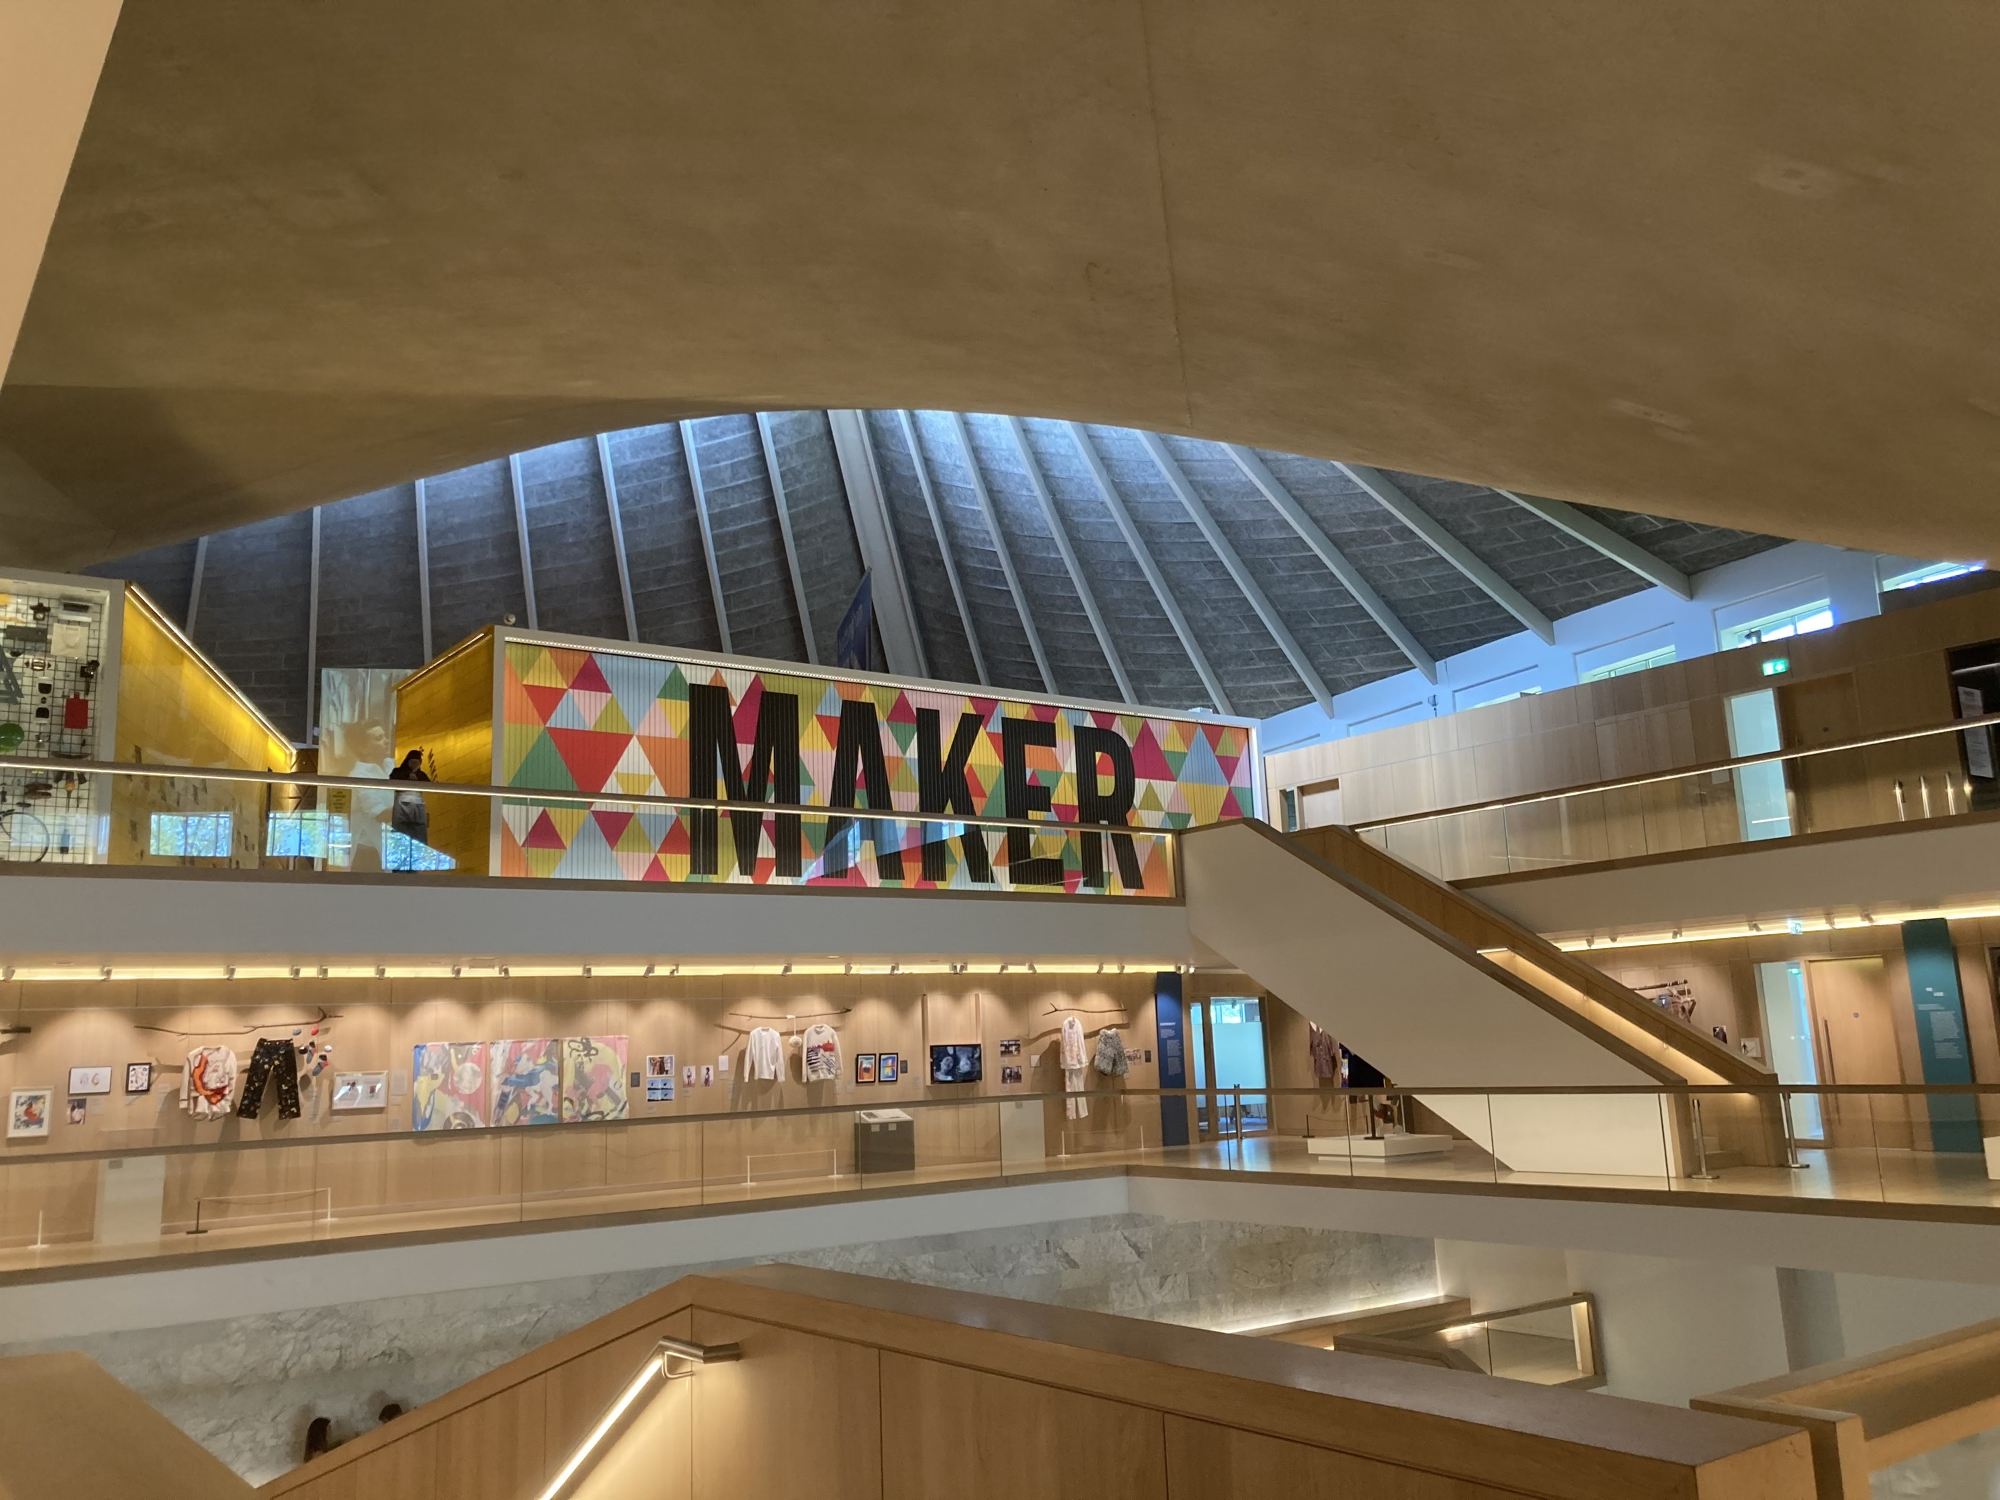 Blick durch den offenen Foyerraum des Design Museums, oben scheint Licht durch die Glaskuppel herein, im Mittelgrund eine Textwand mit dem Schriftzug „Maker“, von dort führt eine Treppe ein Stockwerk tiefer, wo Kleidung aus der Modeausstellung zu sehen ist